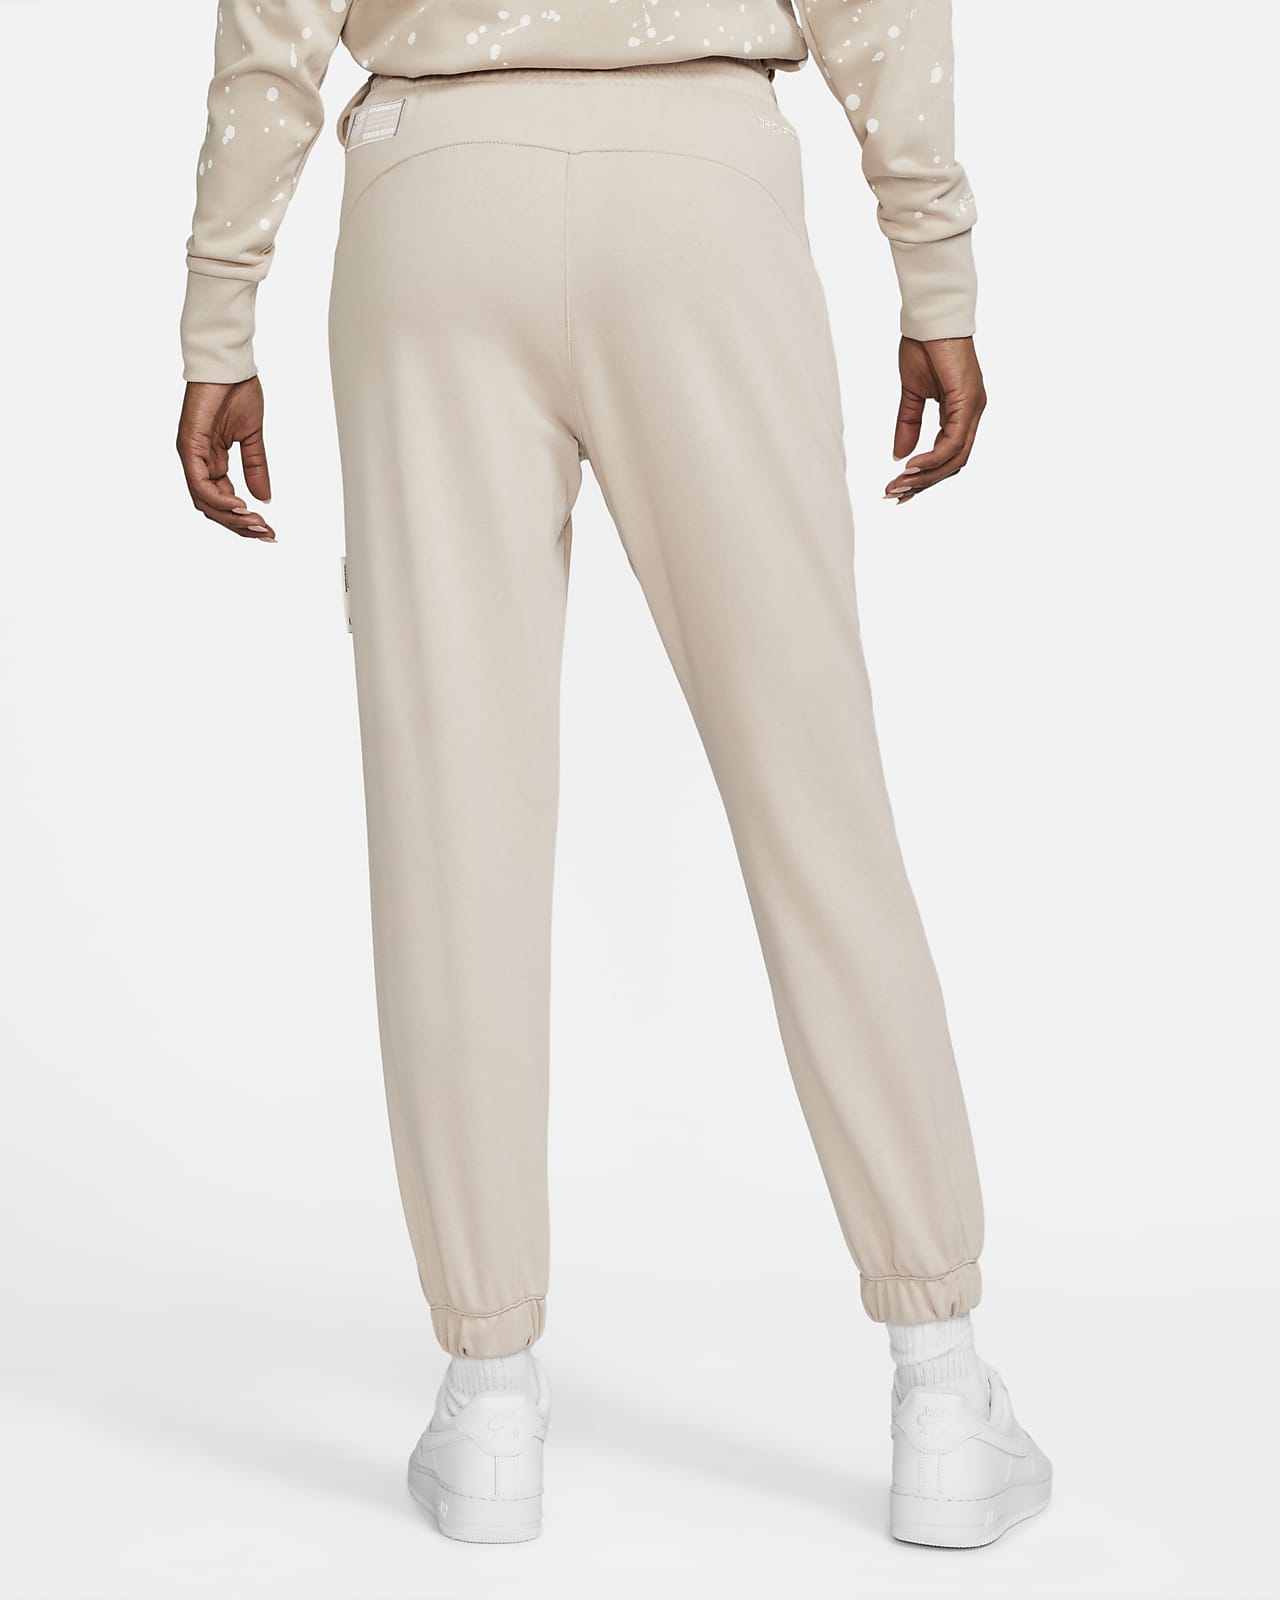 U.S. Standard Issue Women's Nike Dri-FIT Pants.